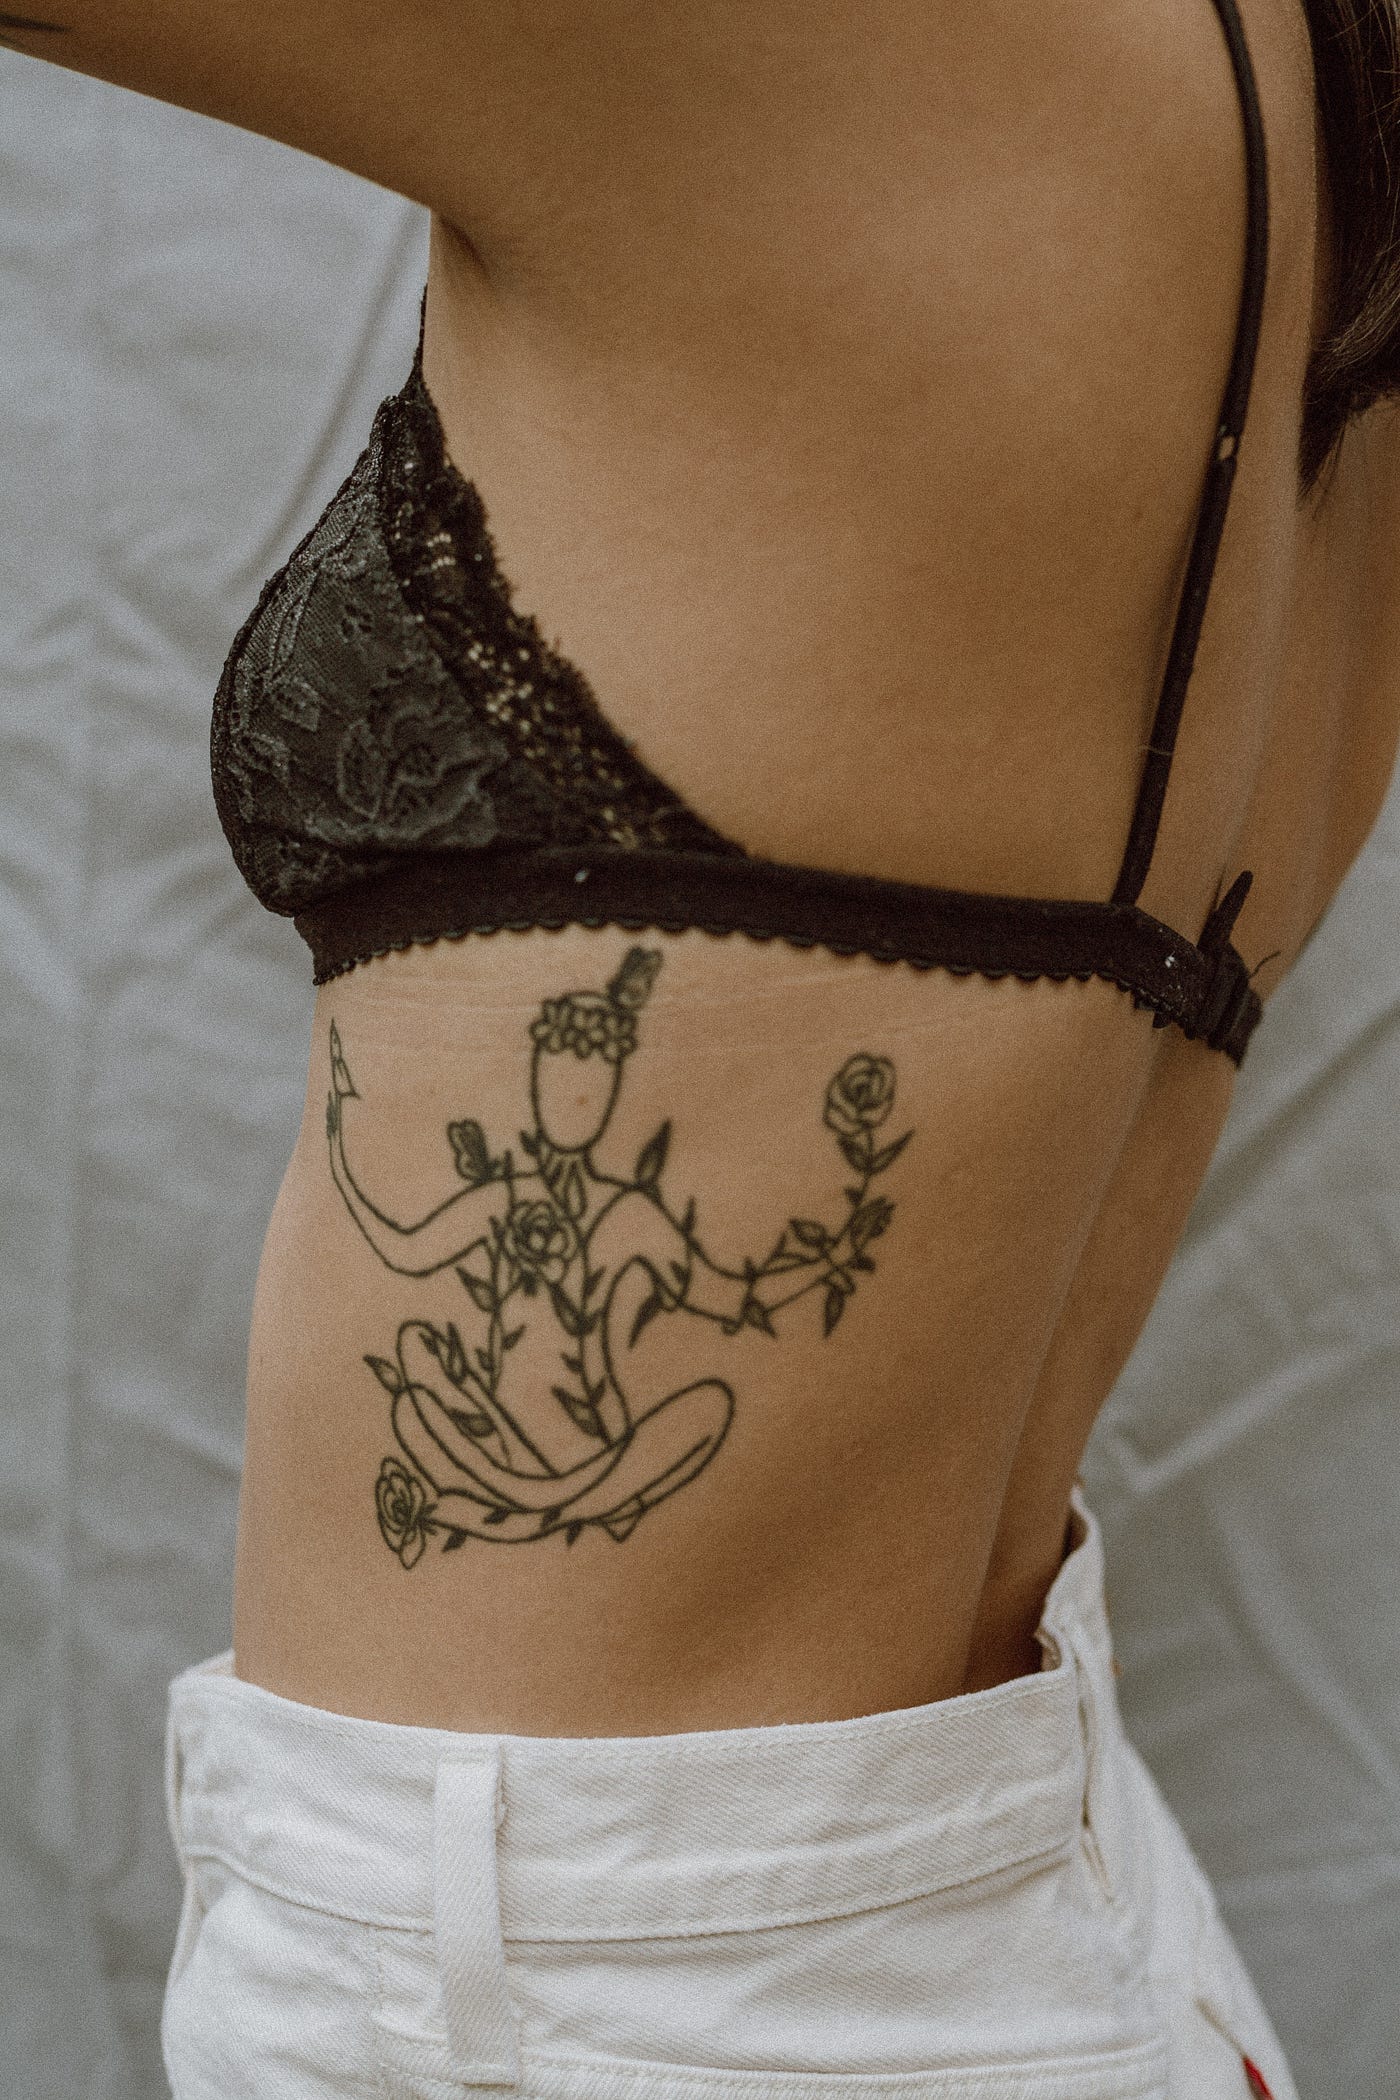 A Tattoo. The Tattoo.. Photo by Jasmin Chew on Unsplash